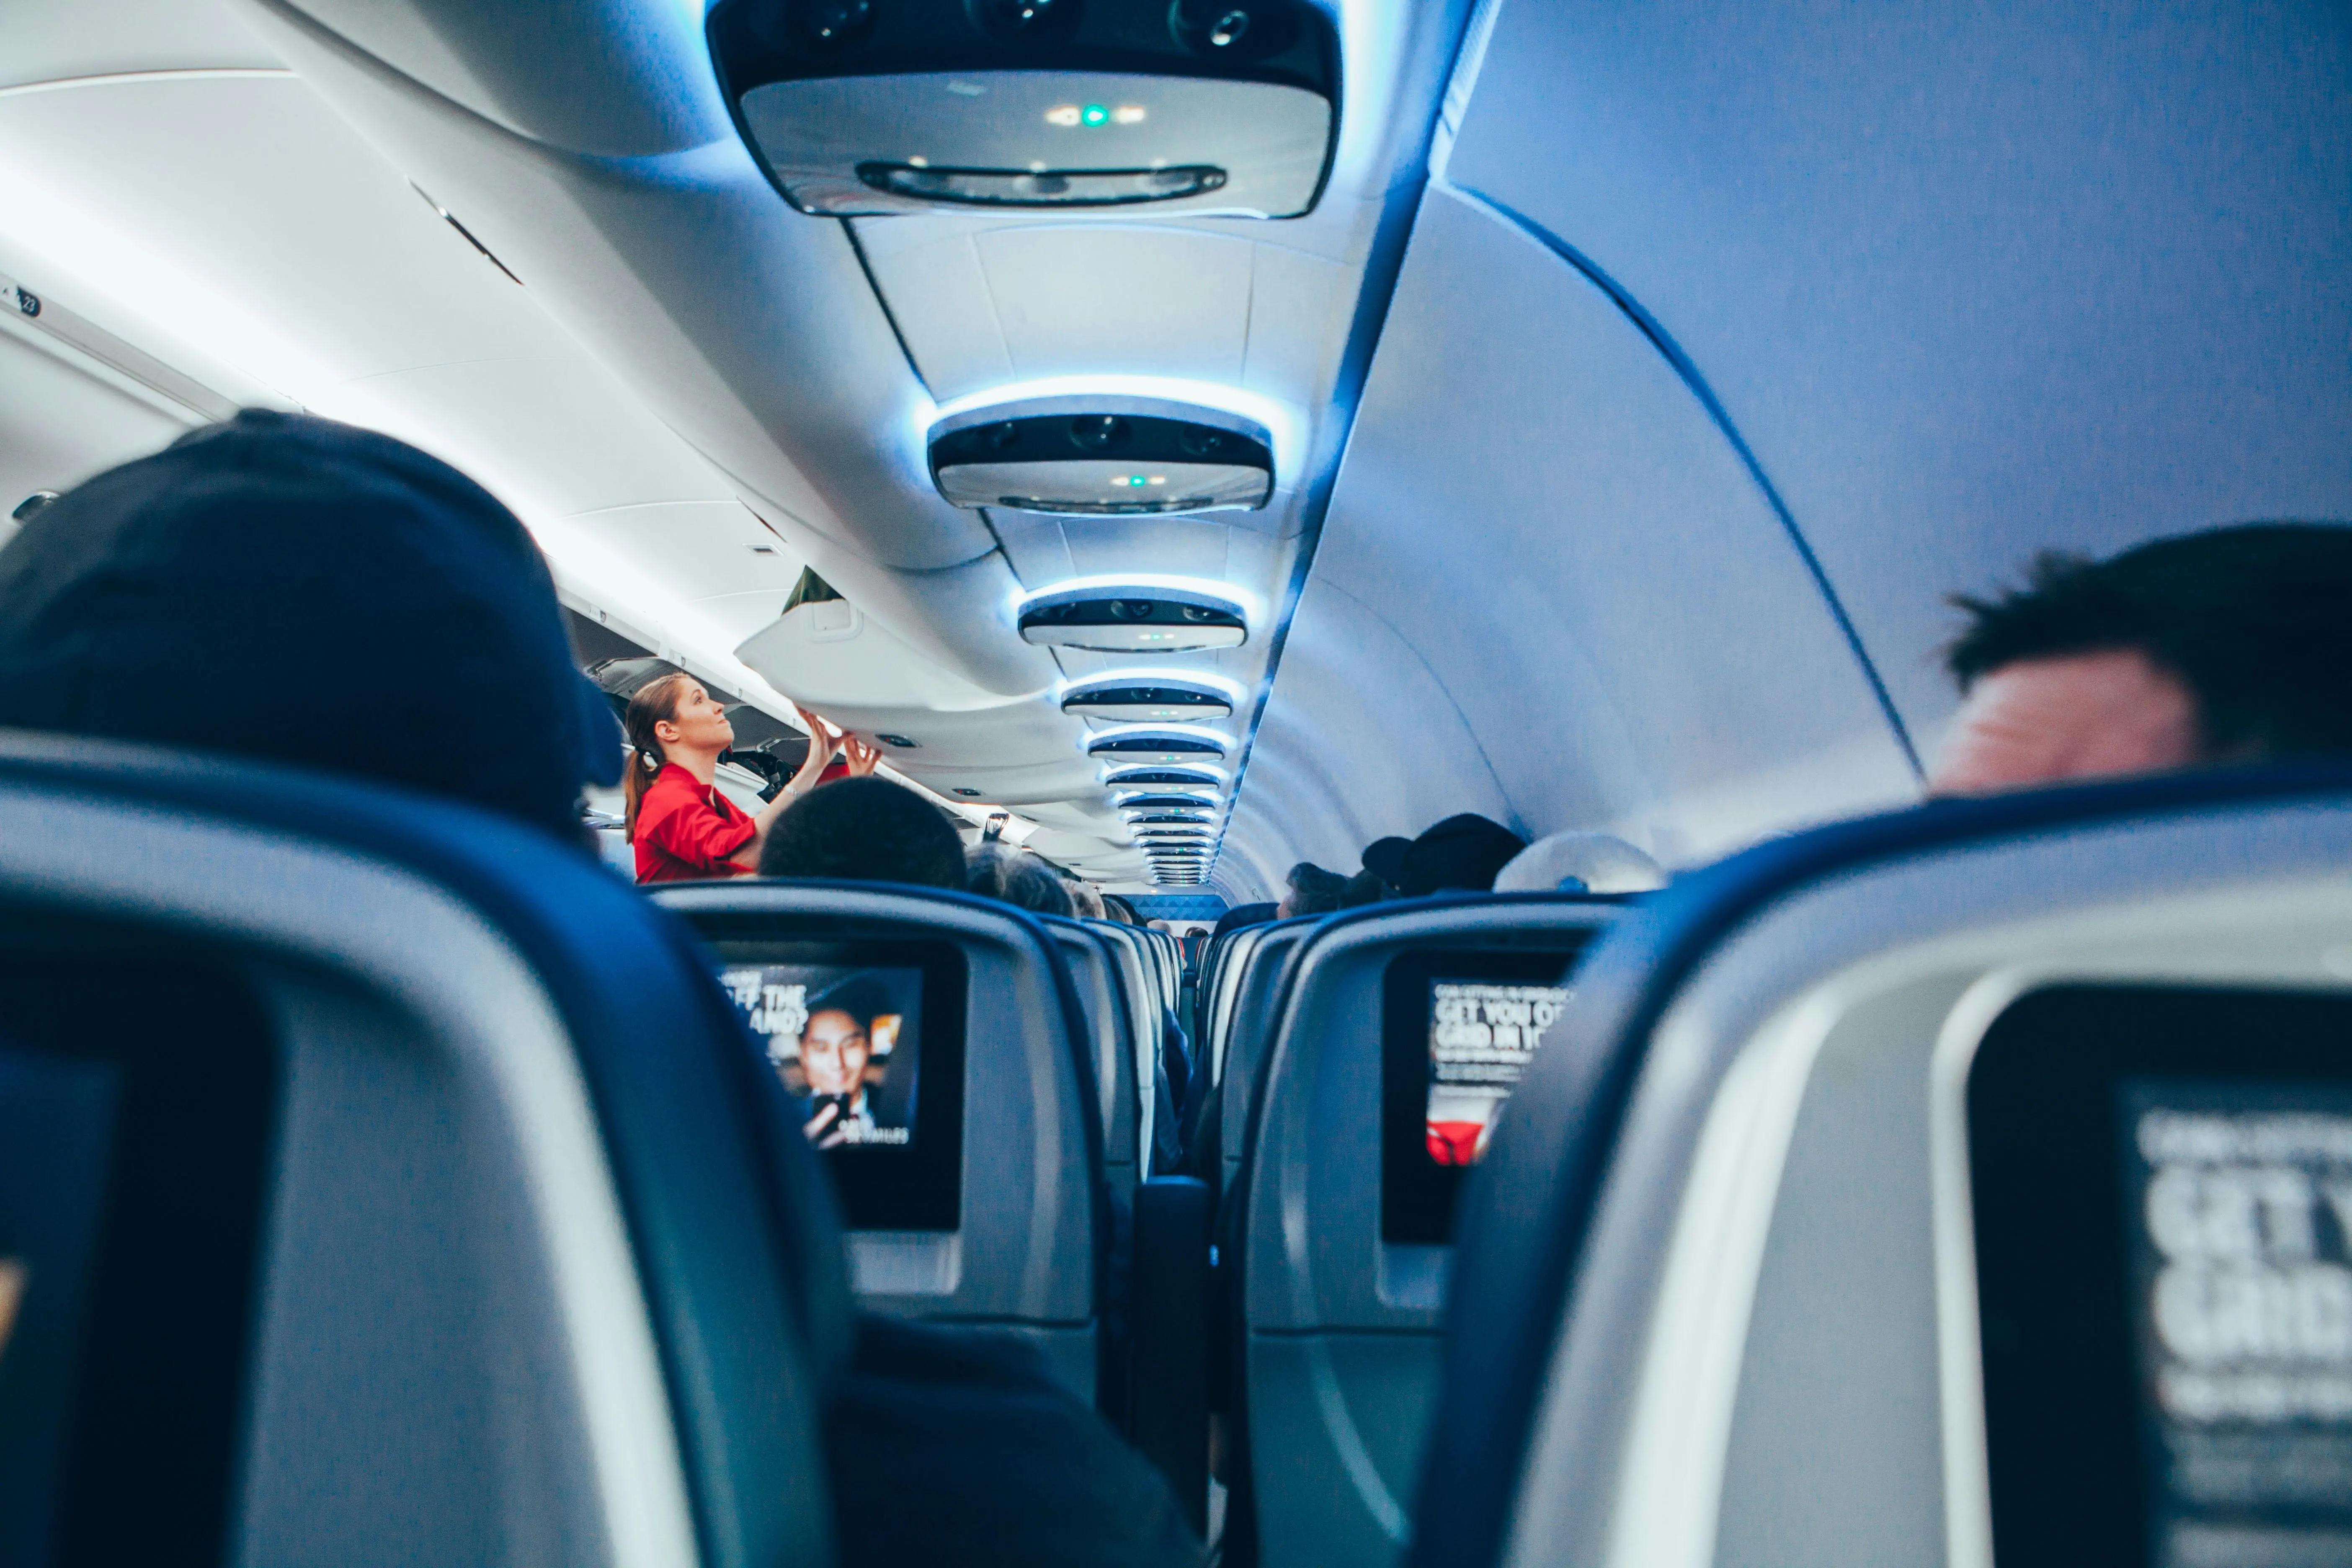 Це не перший клас: стюардеса розповіла, де насправді сидять найменш привітні пасажири